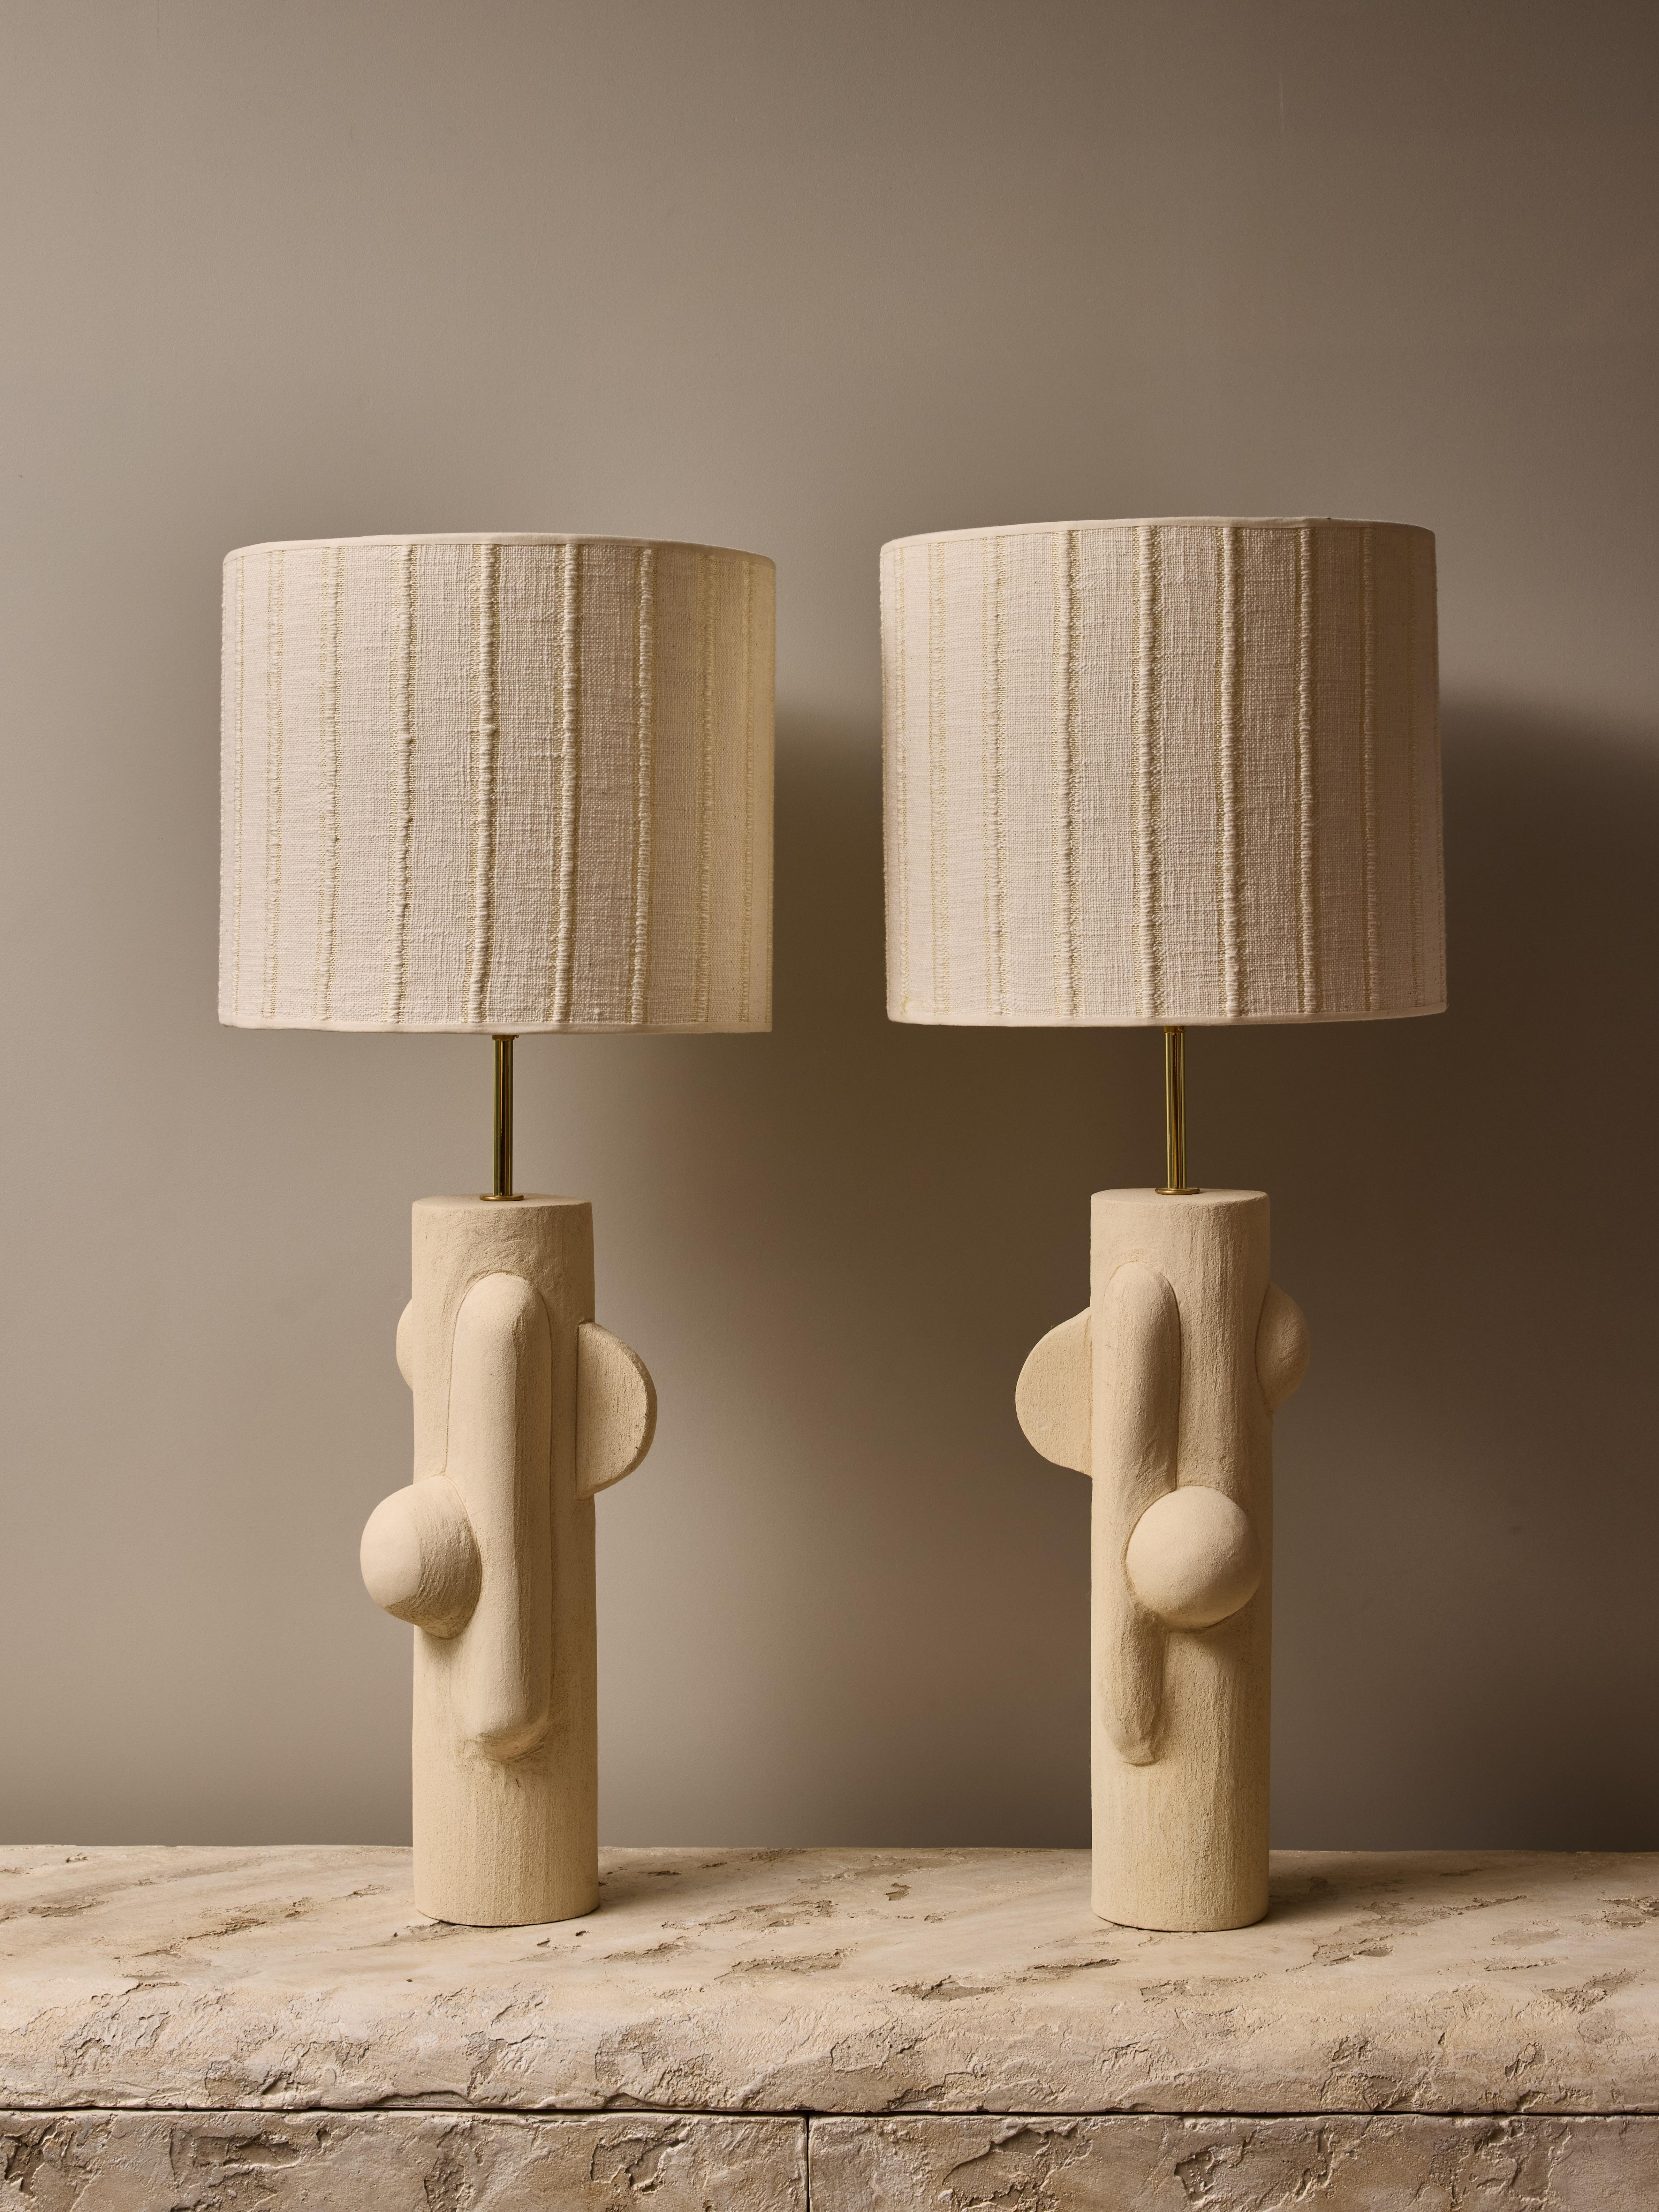 Paire de lampes de table en céramique de la talentueuse artiste contemporaine française Olivia Cognet.

Ces lampes fines de forme tubulaire ont un design en miroir de formes géométriques douces, une quincaillerie en laiton et sont surmontées d'un